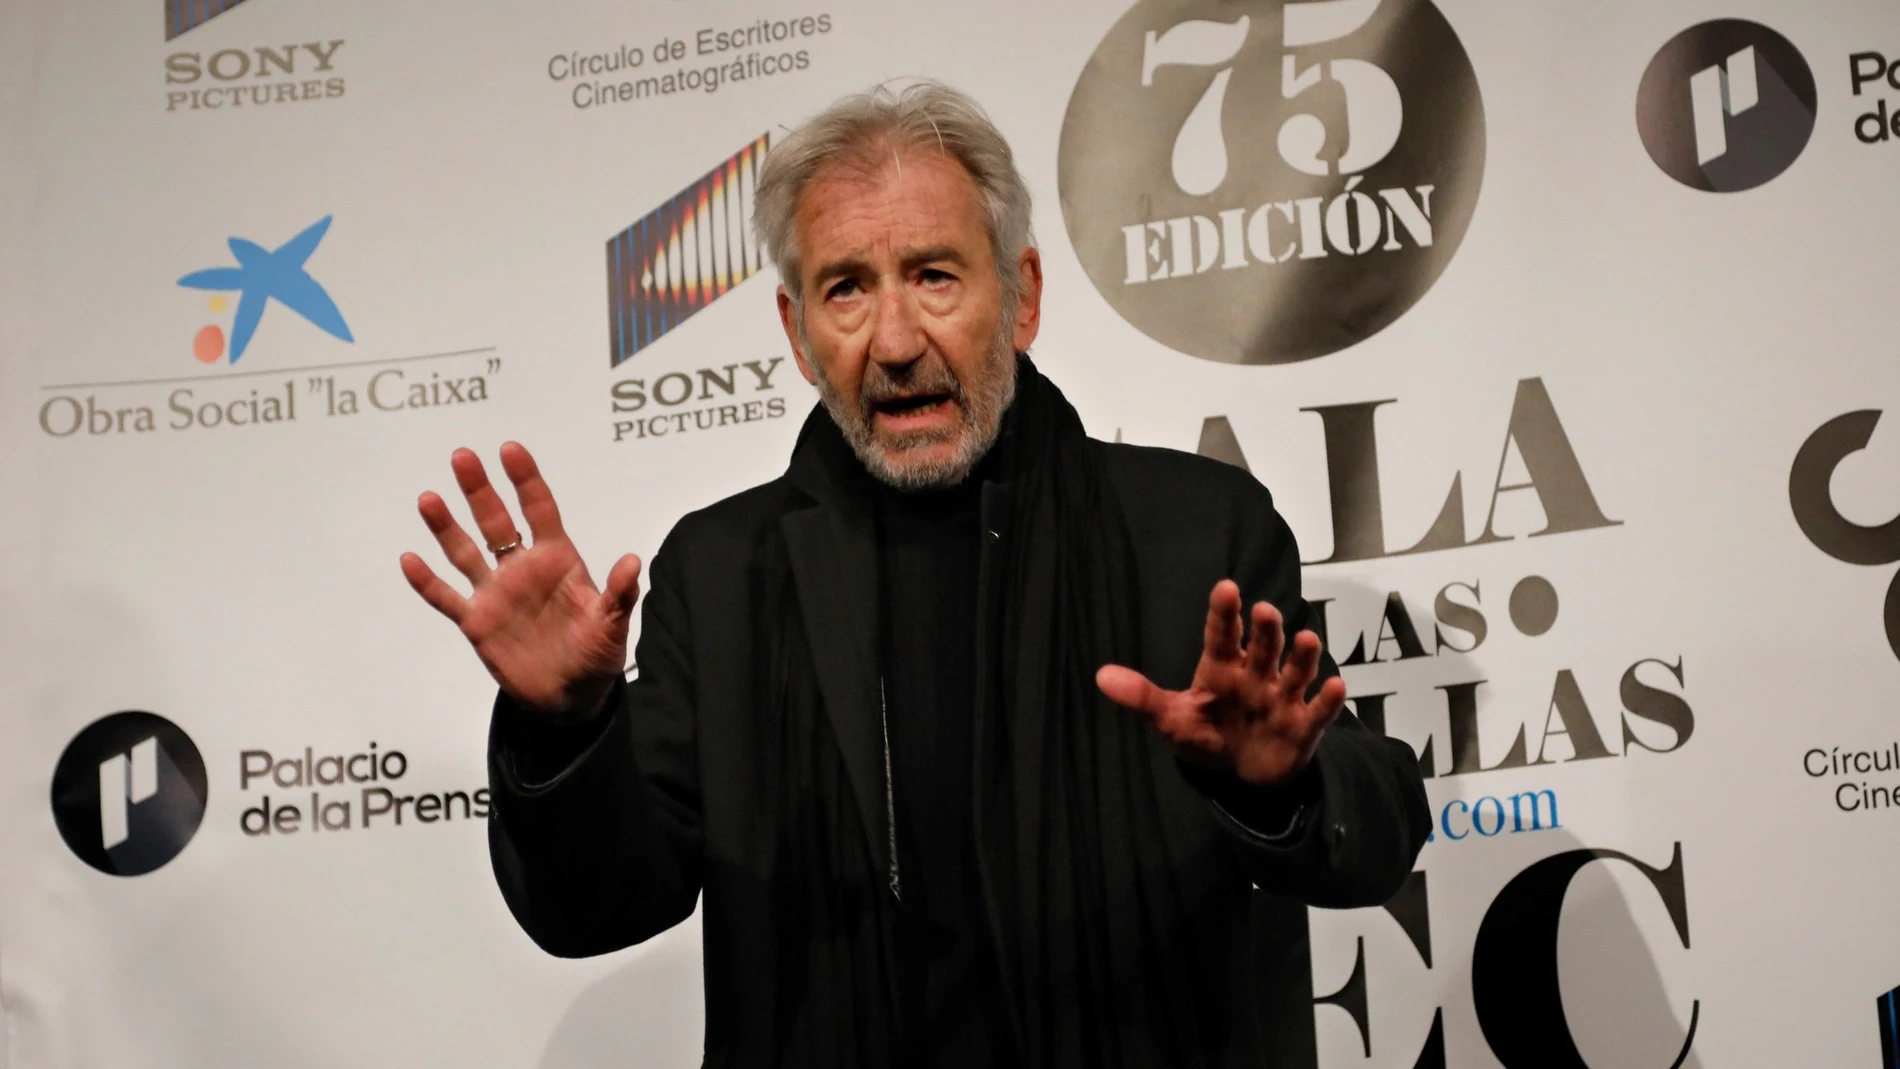 El actor José Sacristán a su llegada a la gala de la 75 edición de las Medallas del Circulo de Escritores Cinematográficos (CEC), este lunes en el Palacio de la Prensa, en Madrid.